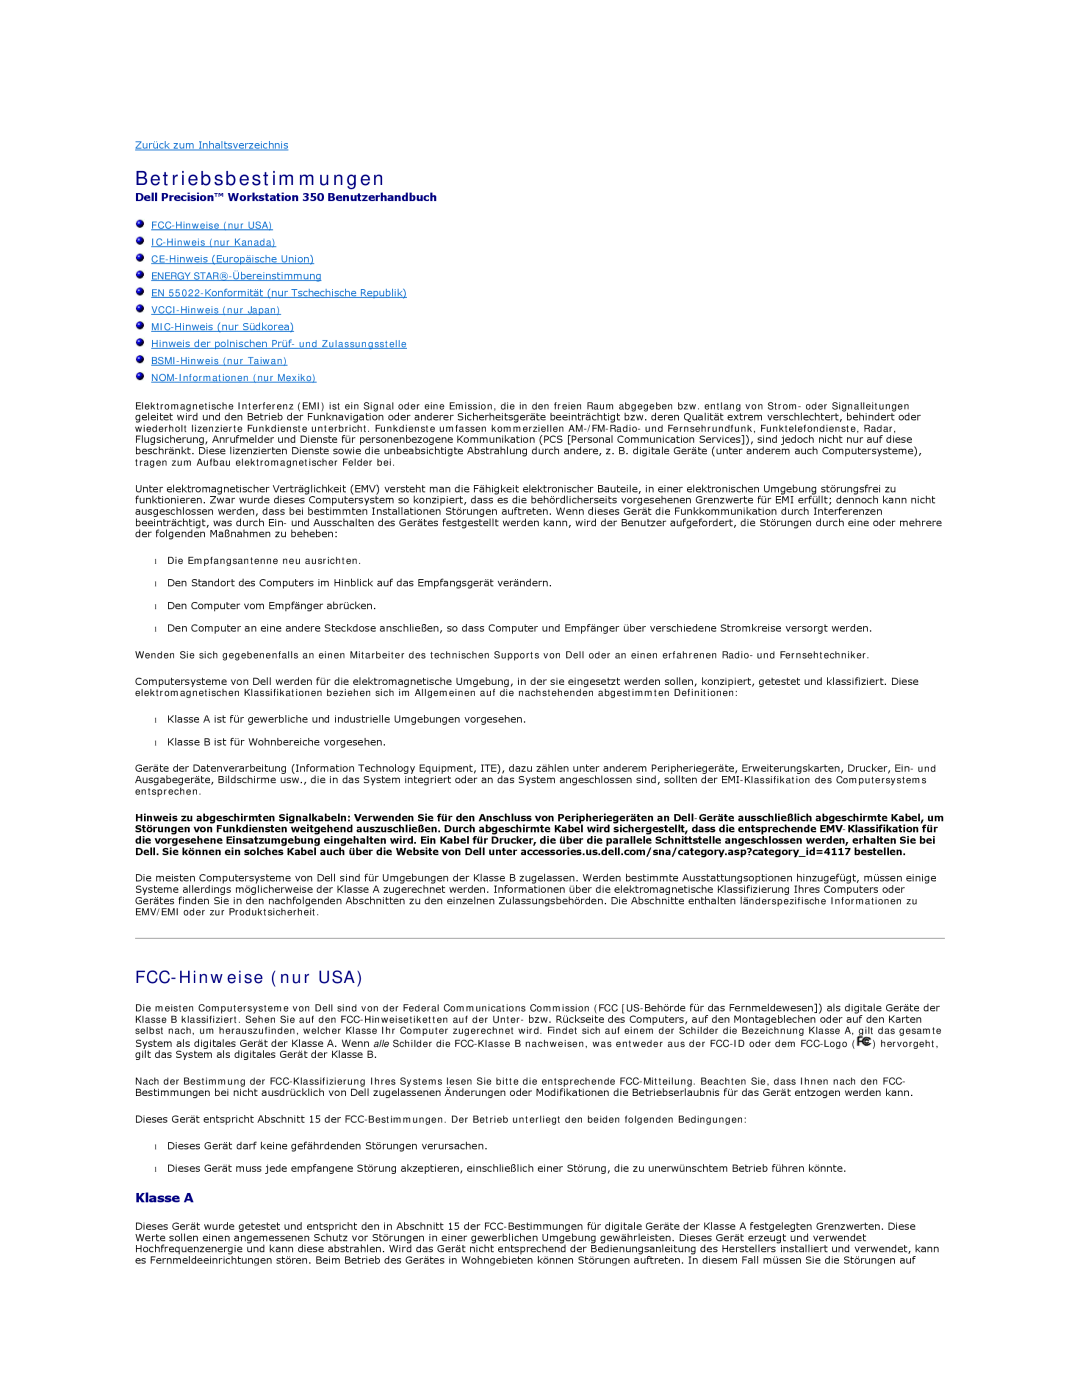 Dell manual Betriebsbestimmungen, FCC-Hinweisenur USA, Klasse A, Dell Precision Workstation 350 Benutzerhandbuch 